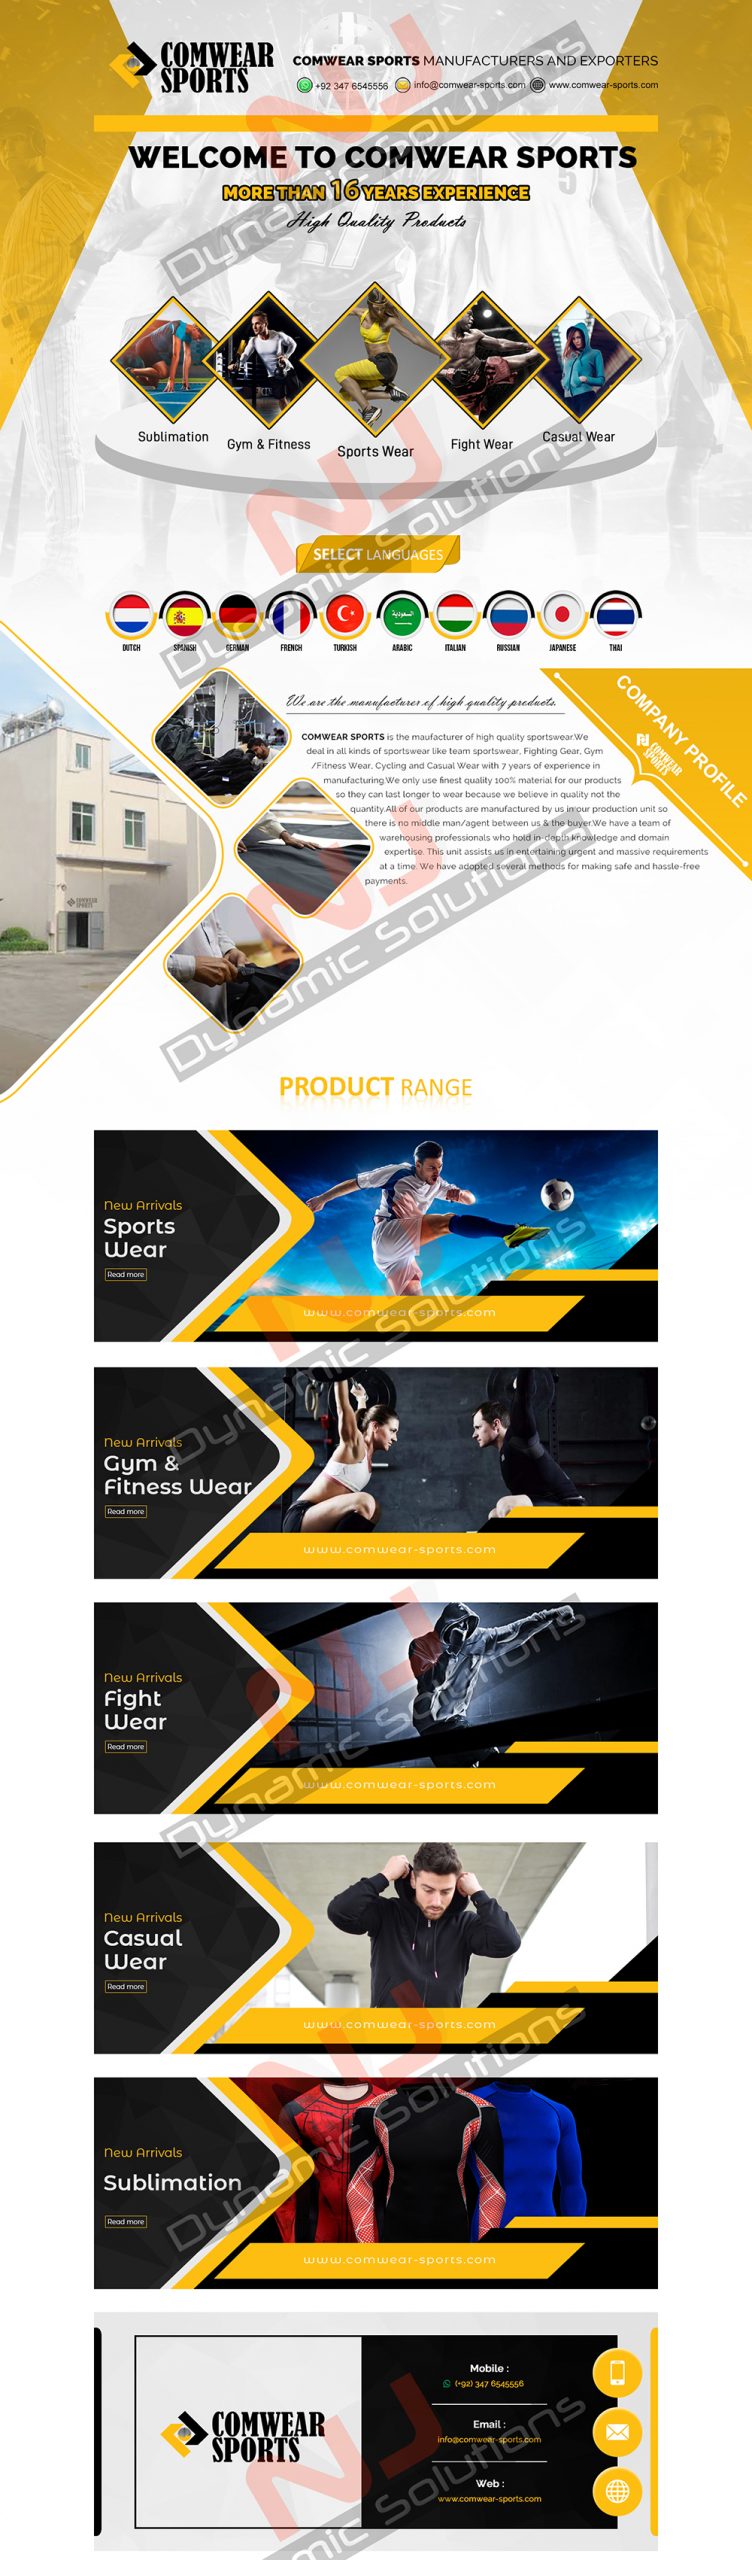 Comwear Sports Alibaba Minisite Design